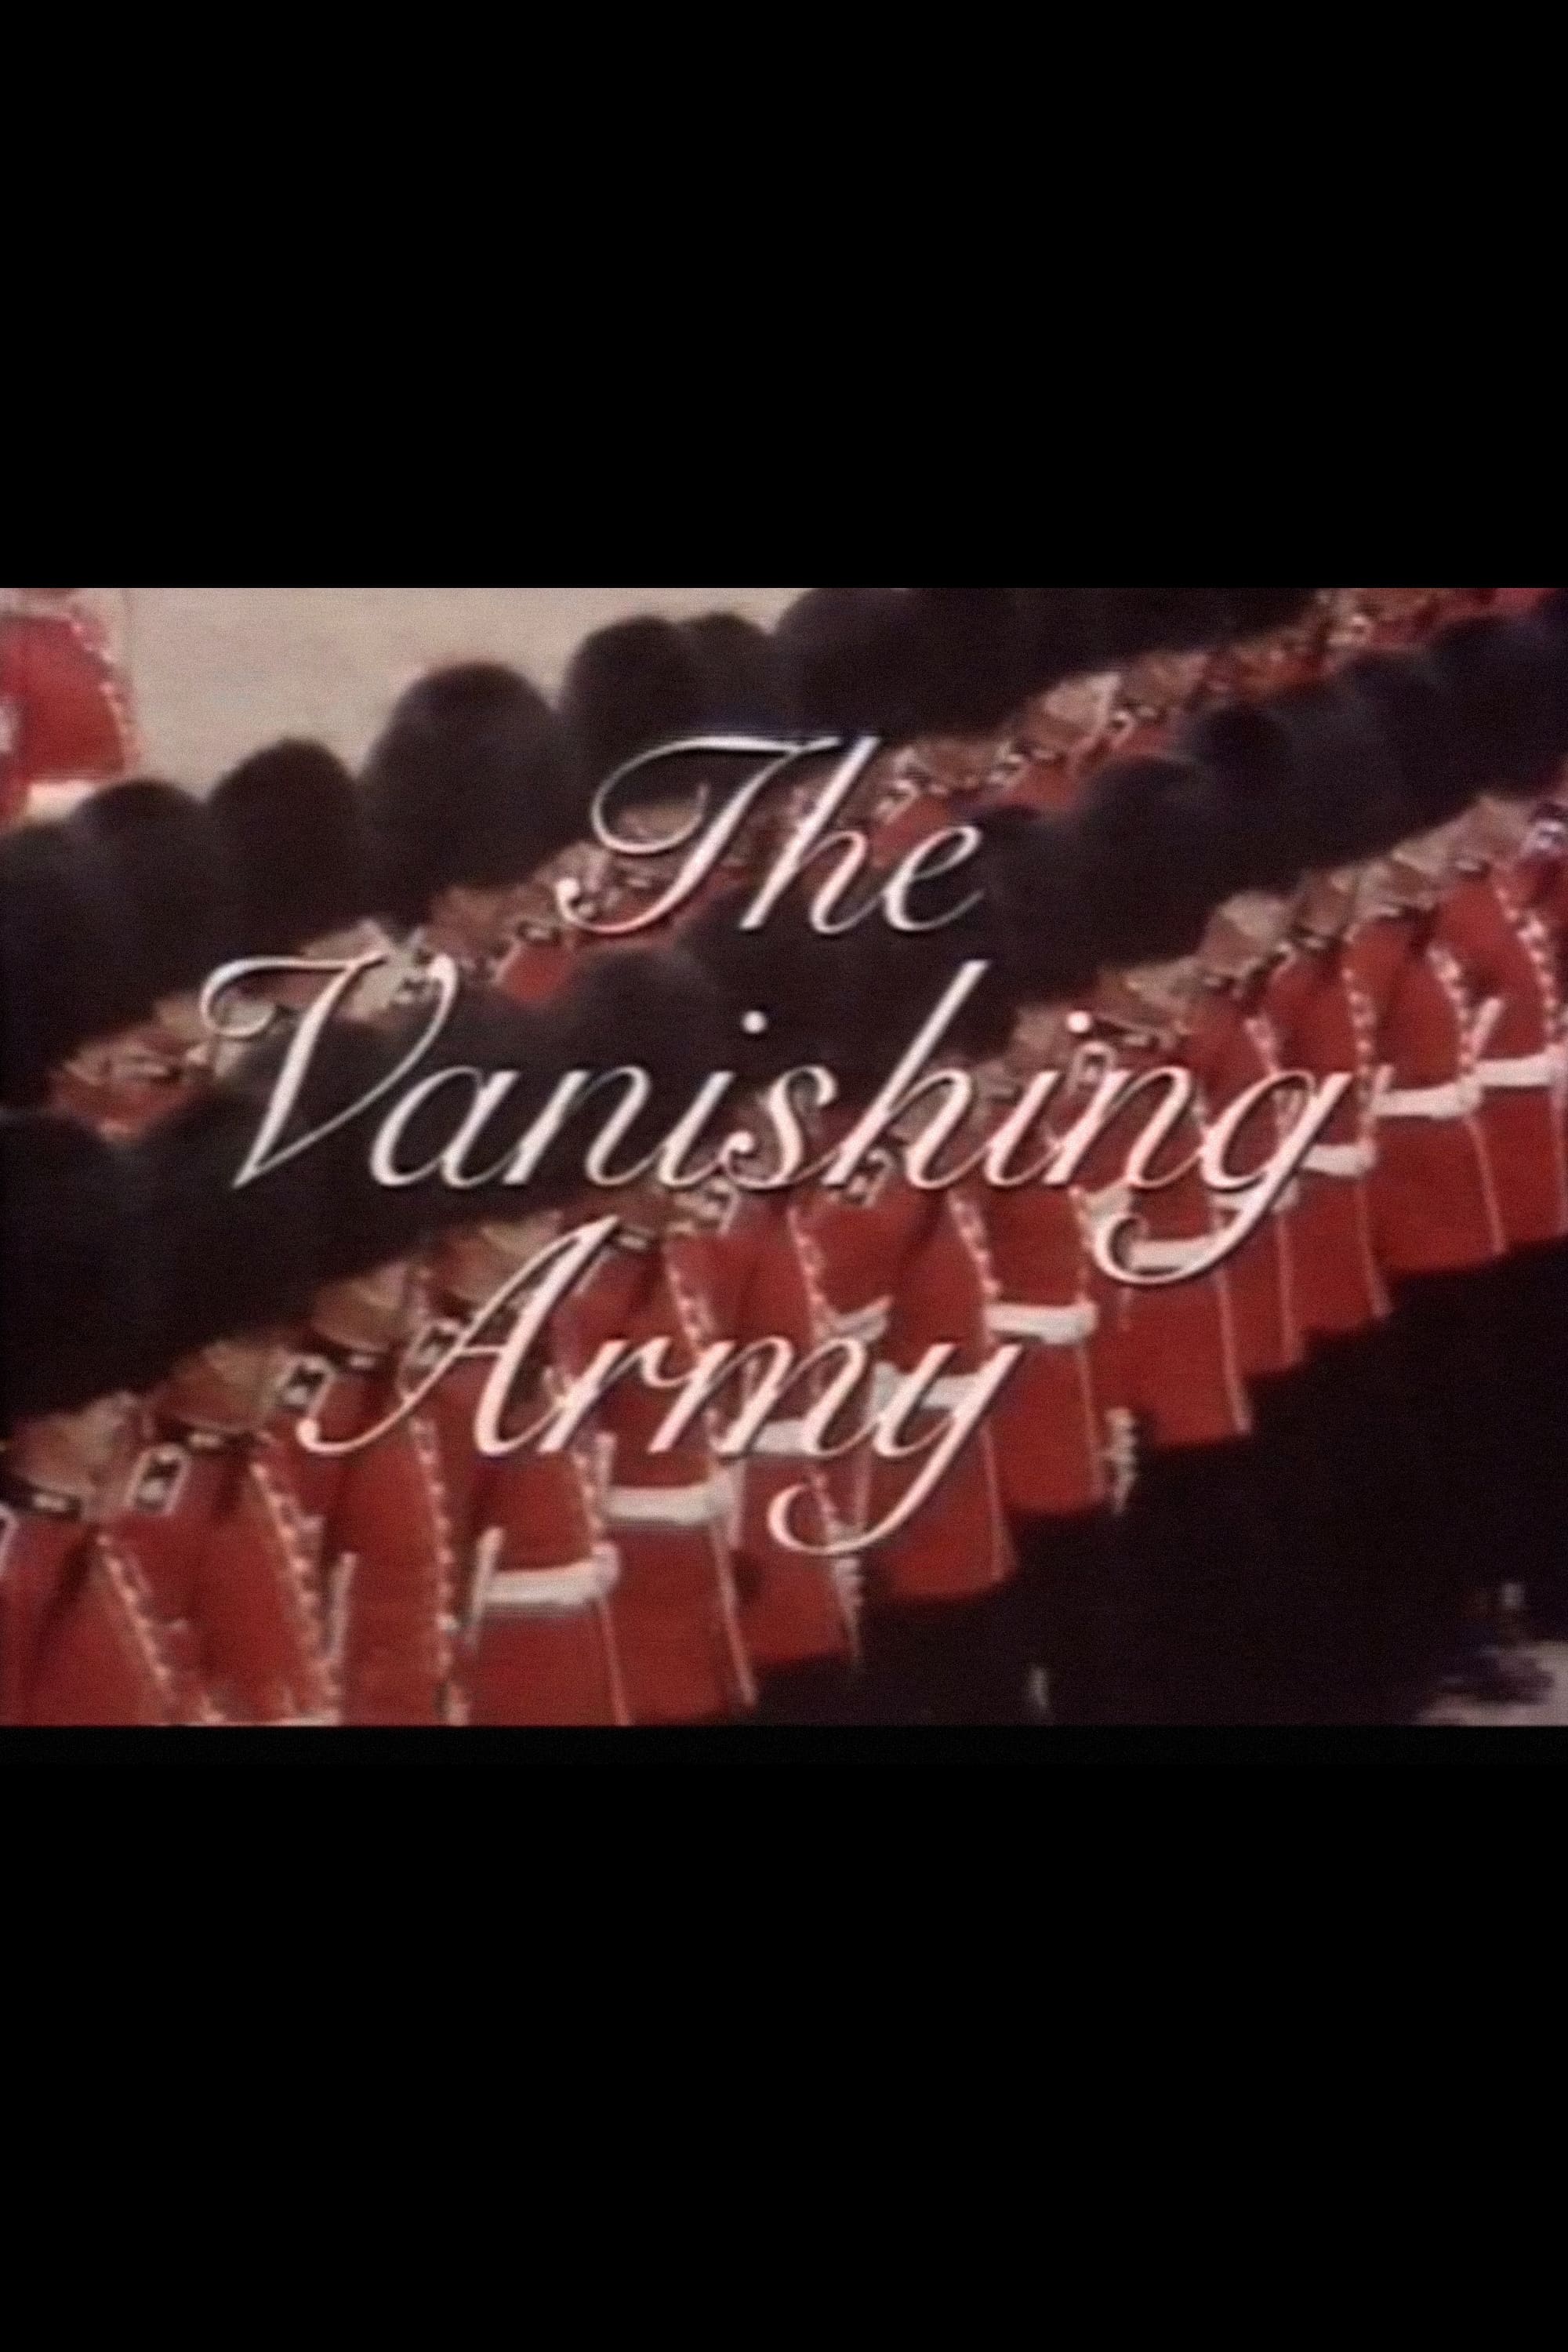 The Vanishing Army (1978)